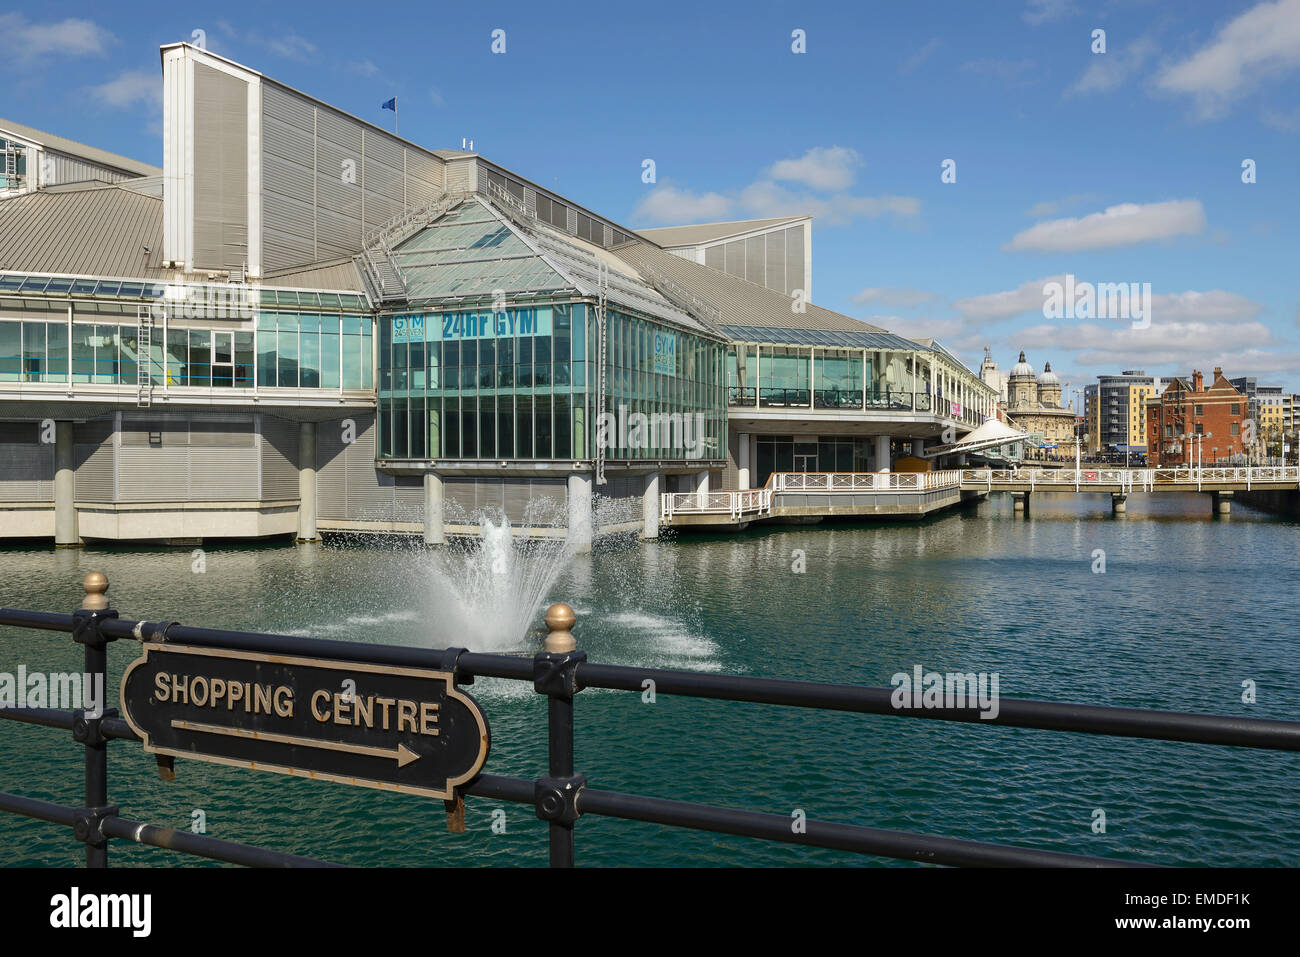 Les Princes Quay Shopping Centre surplombant Princes dock dans le centre-ville de Hull UK Banque D'Images